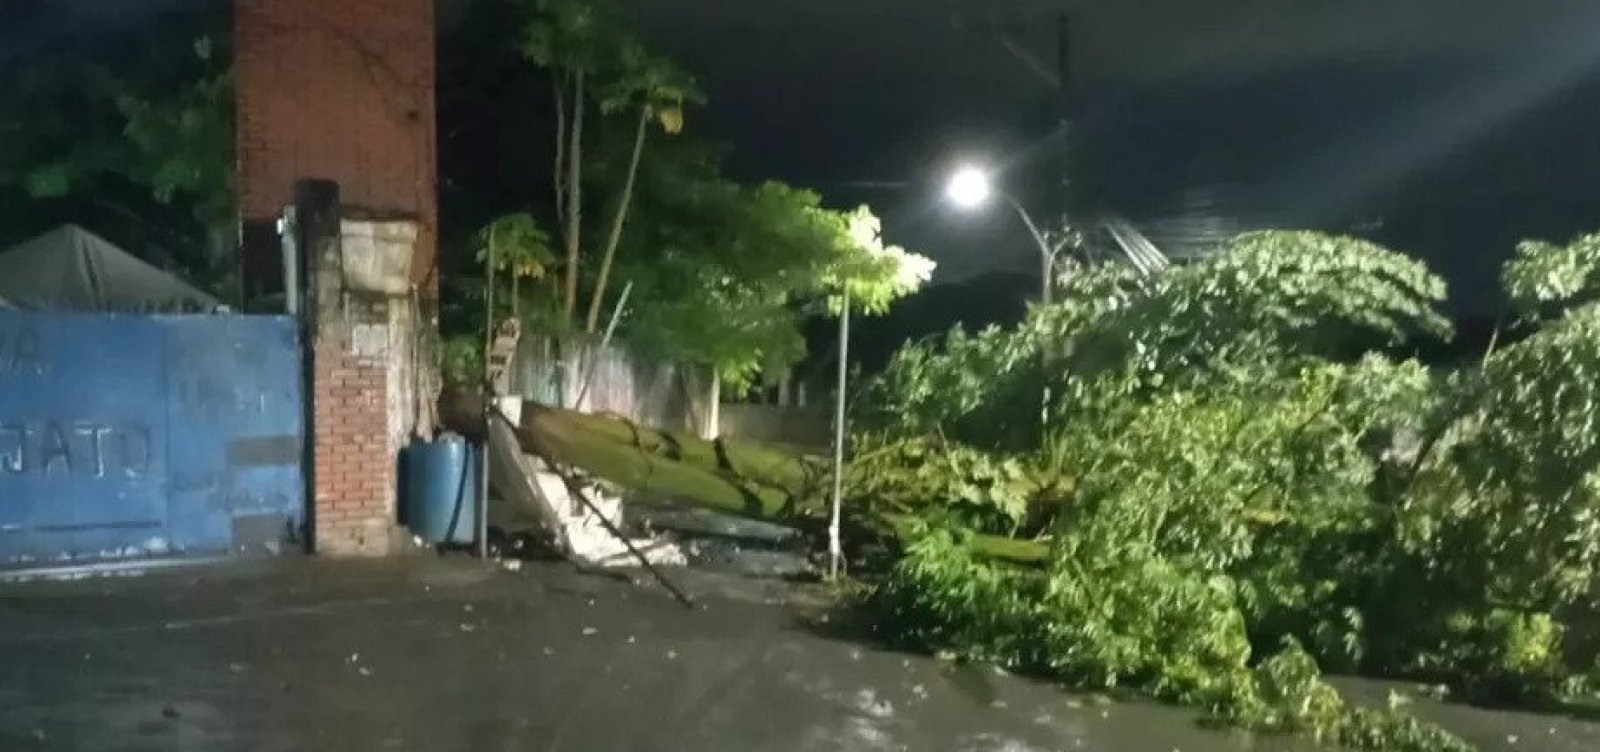 Árvore cai e derruba poste e muro no bairro da Mata Escura, em Salvador